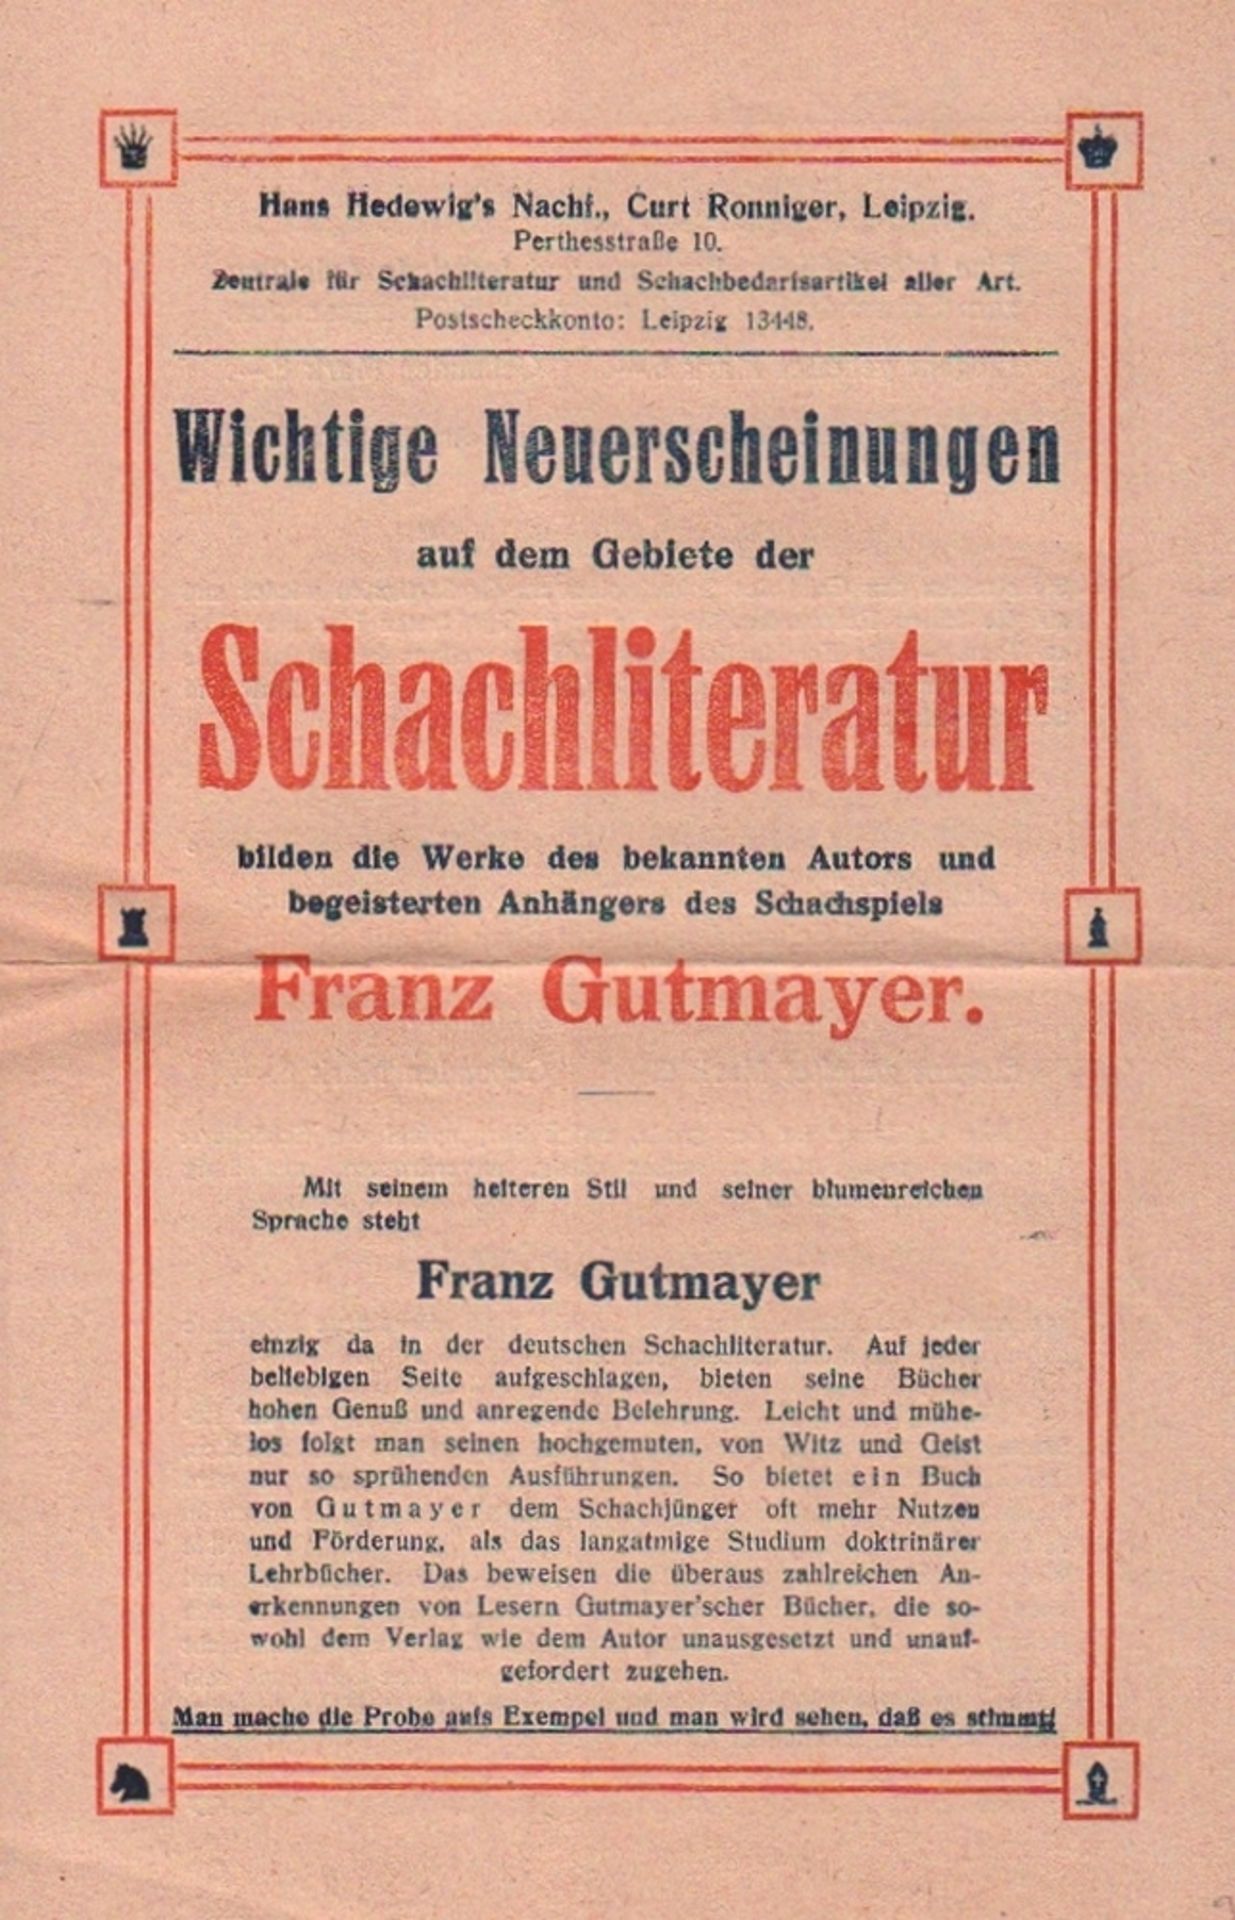 Gutmayer, Franz. Prospekt des Verlages Curt Ronniger, Leipzig ca. 1917 mit "Wichtigen